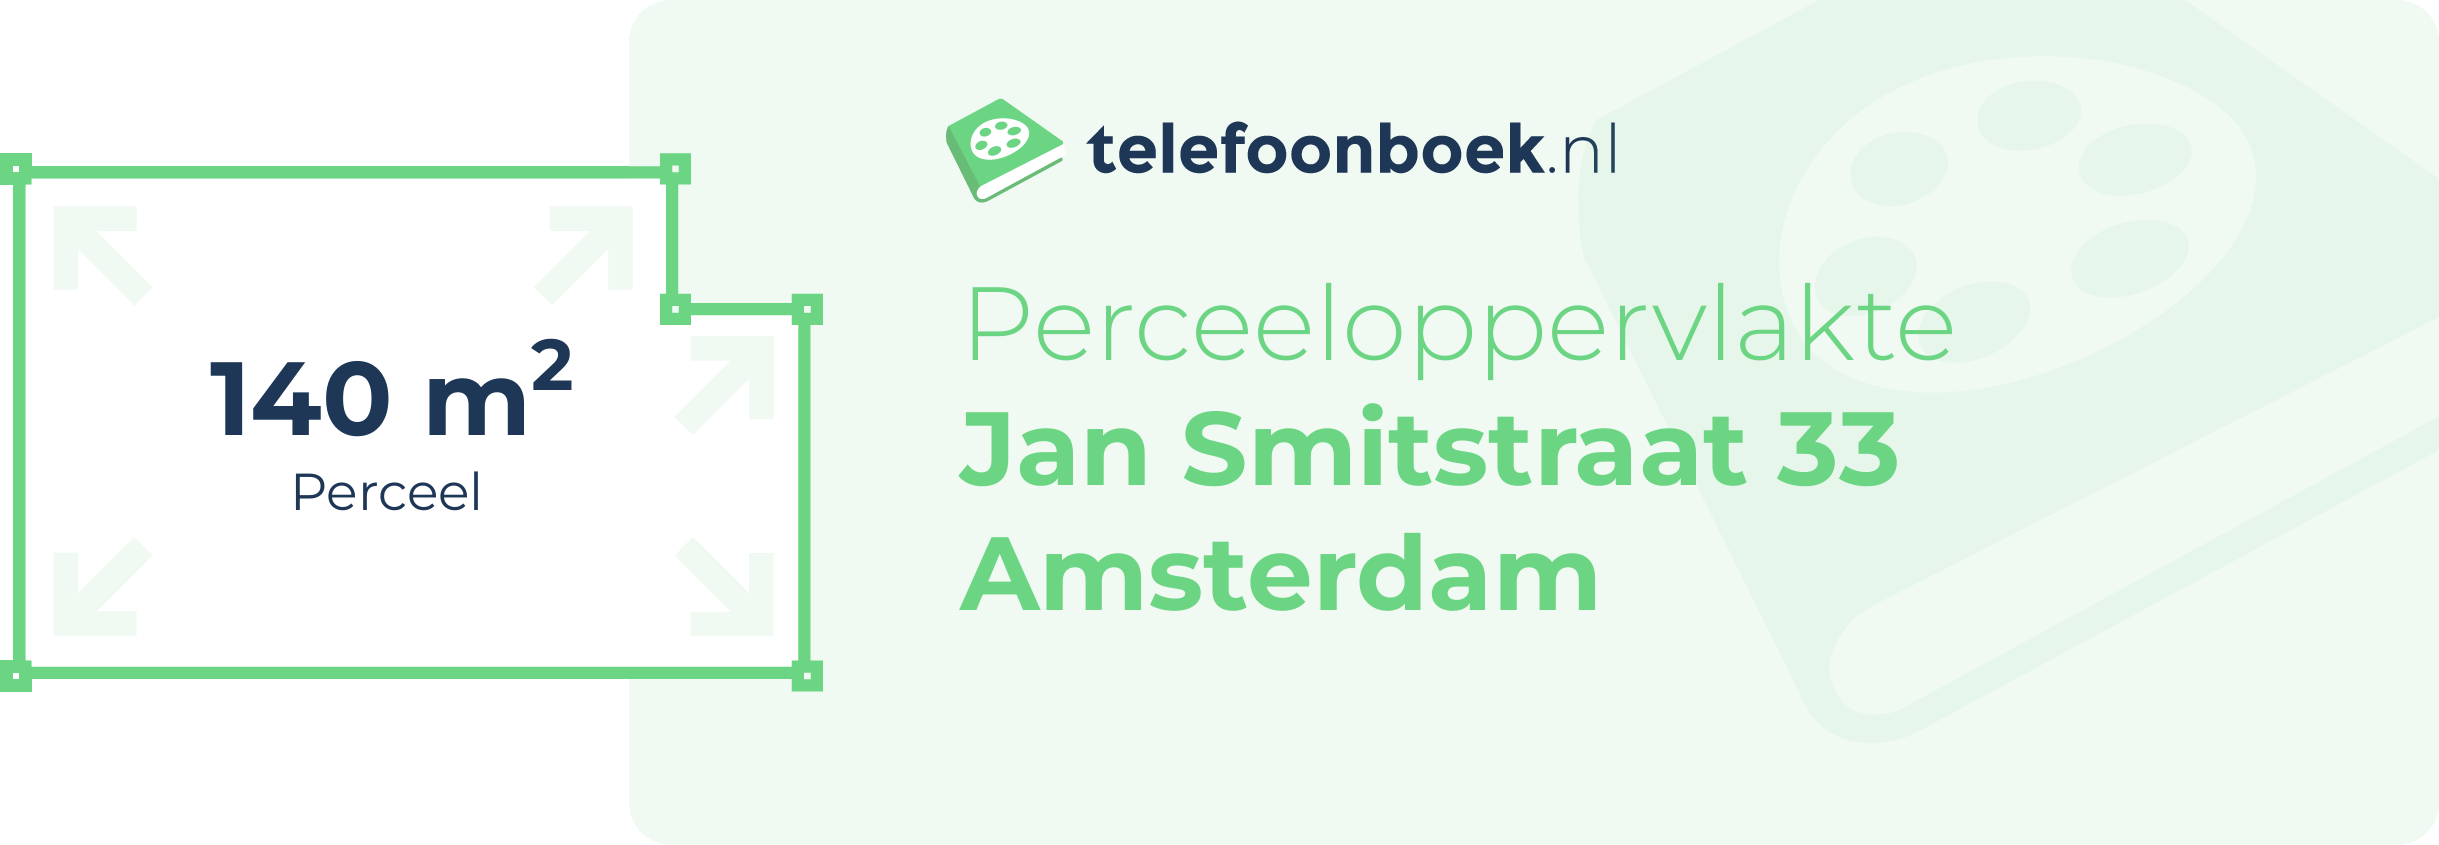 Perceeloppervlakte Jan Smitstraat 33 Amsterdam